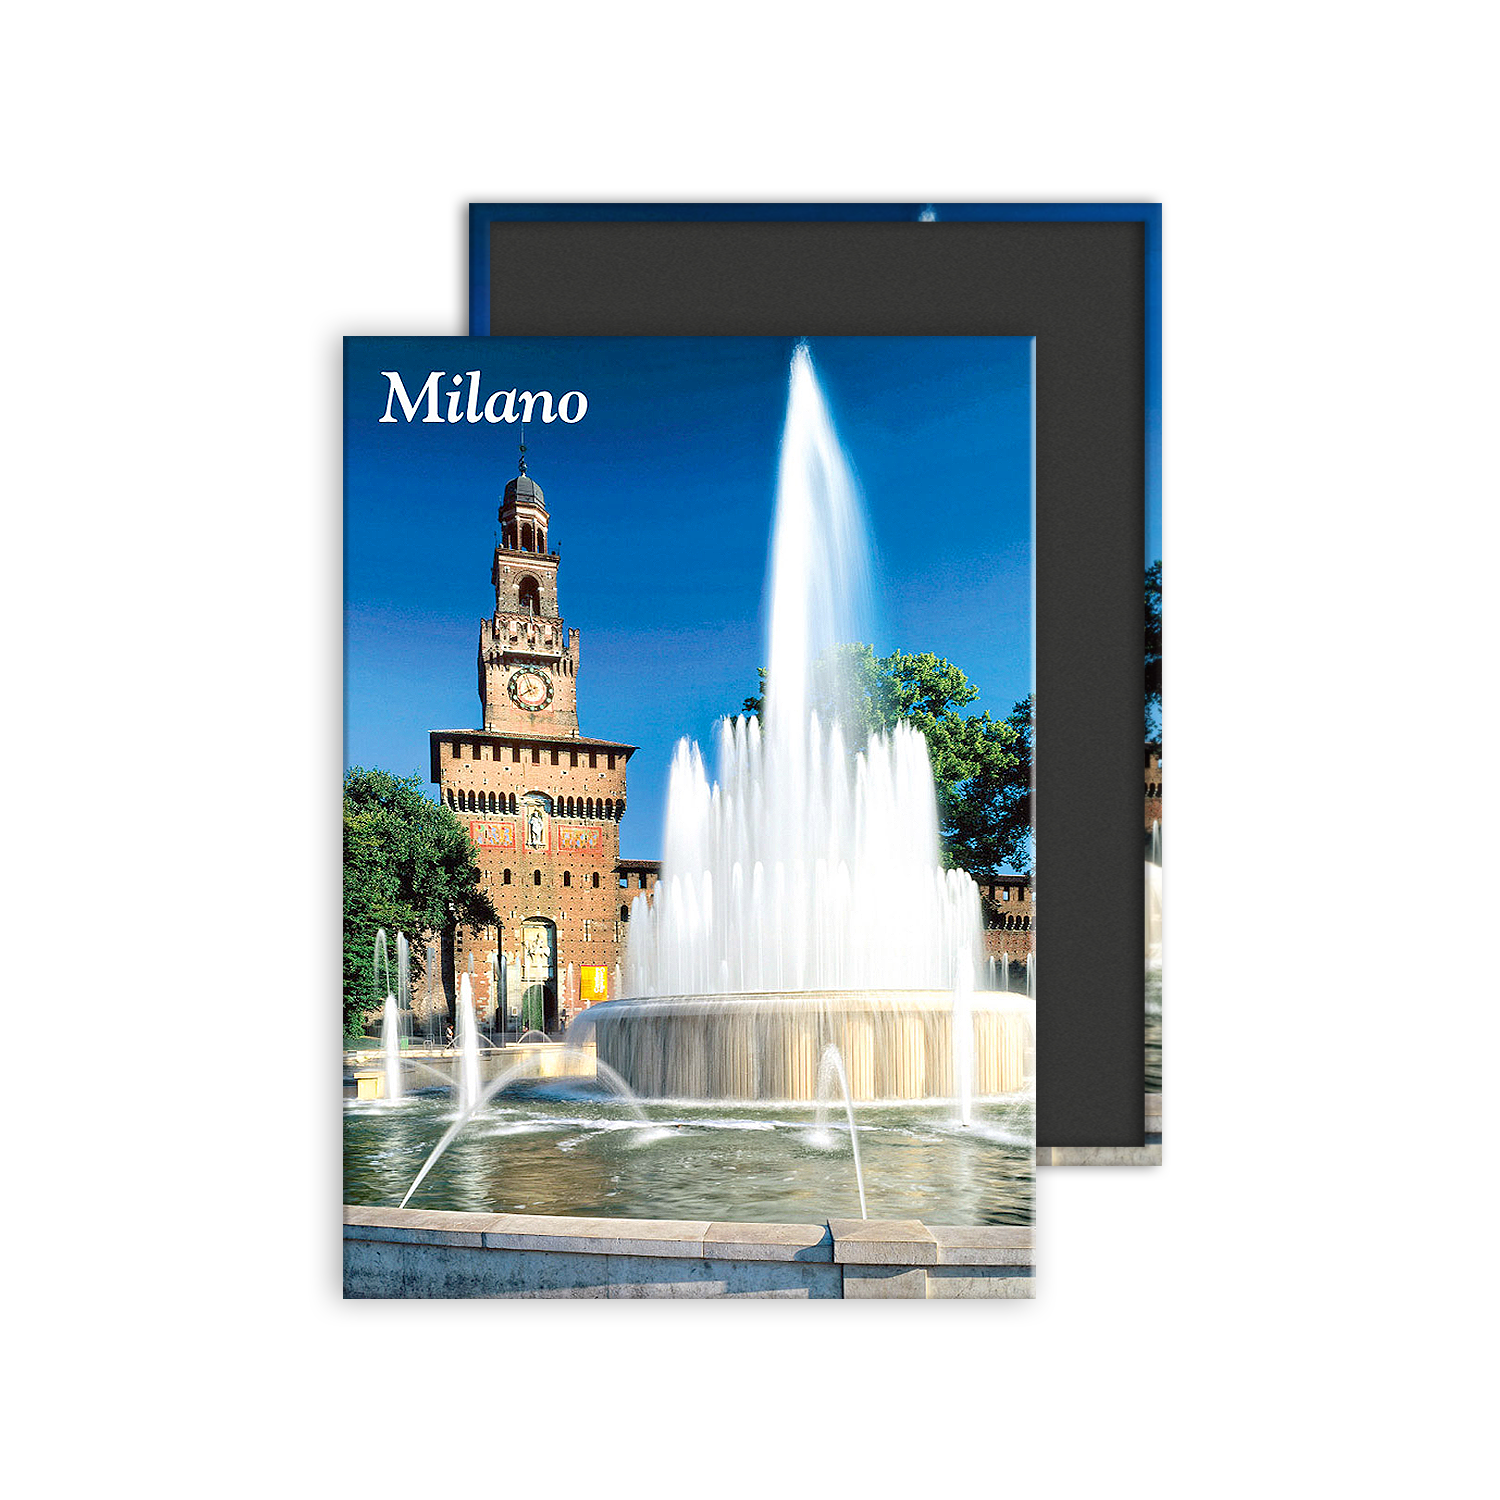 MI M 008 - Milano, Castello Sforzesco